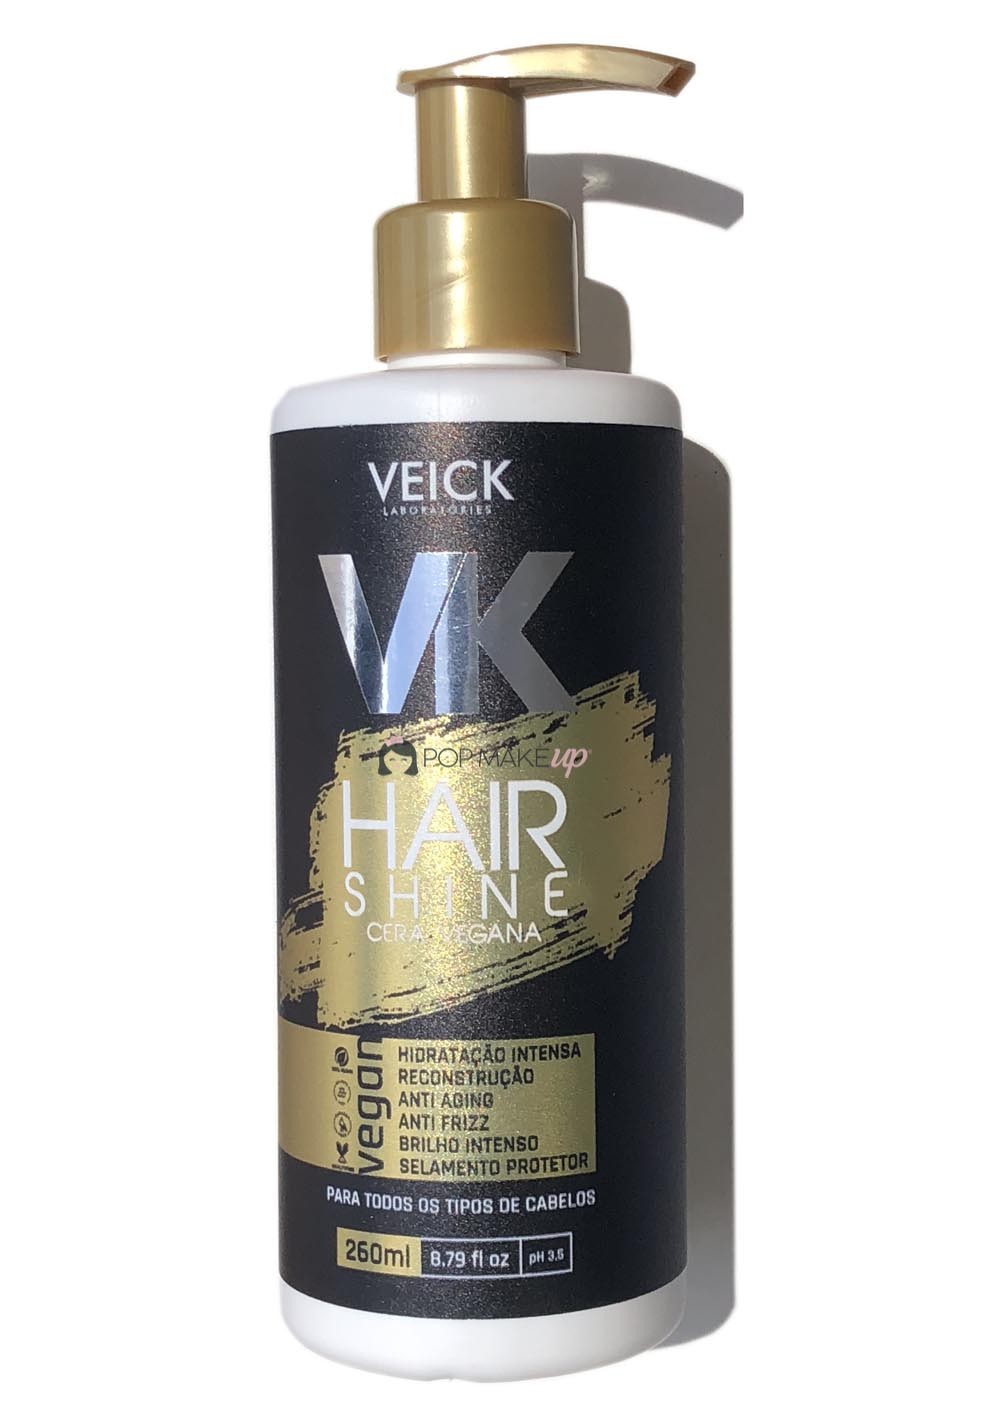 Hair Shine Cera Vegana | Veick